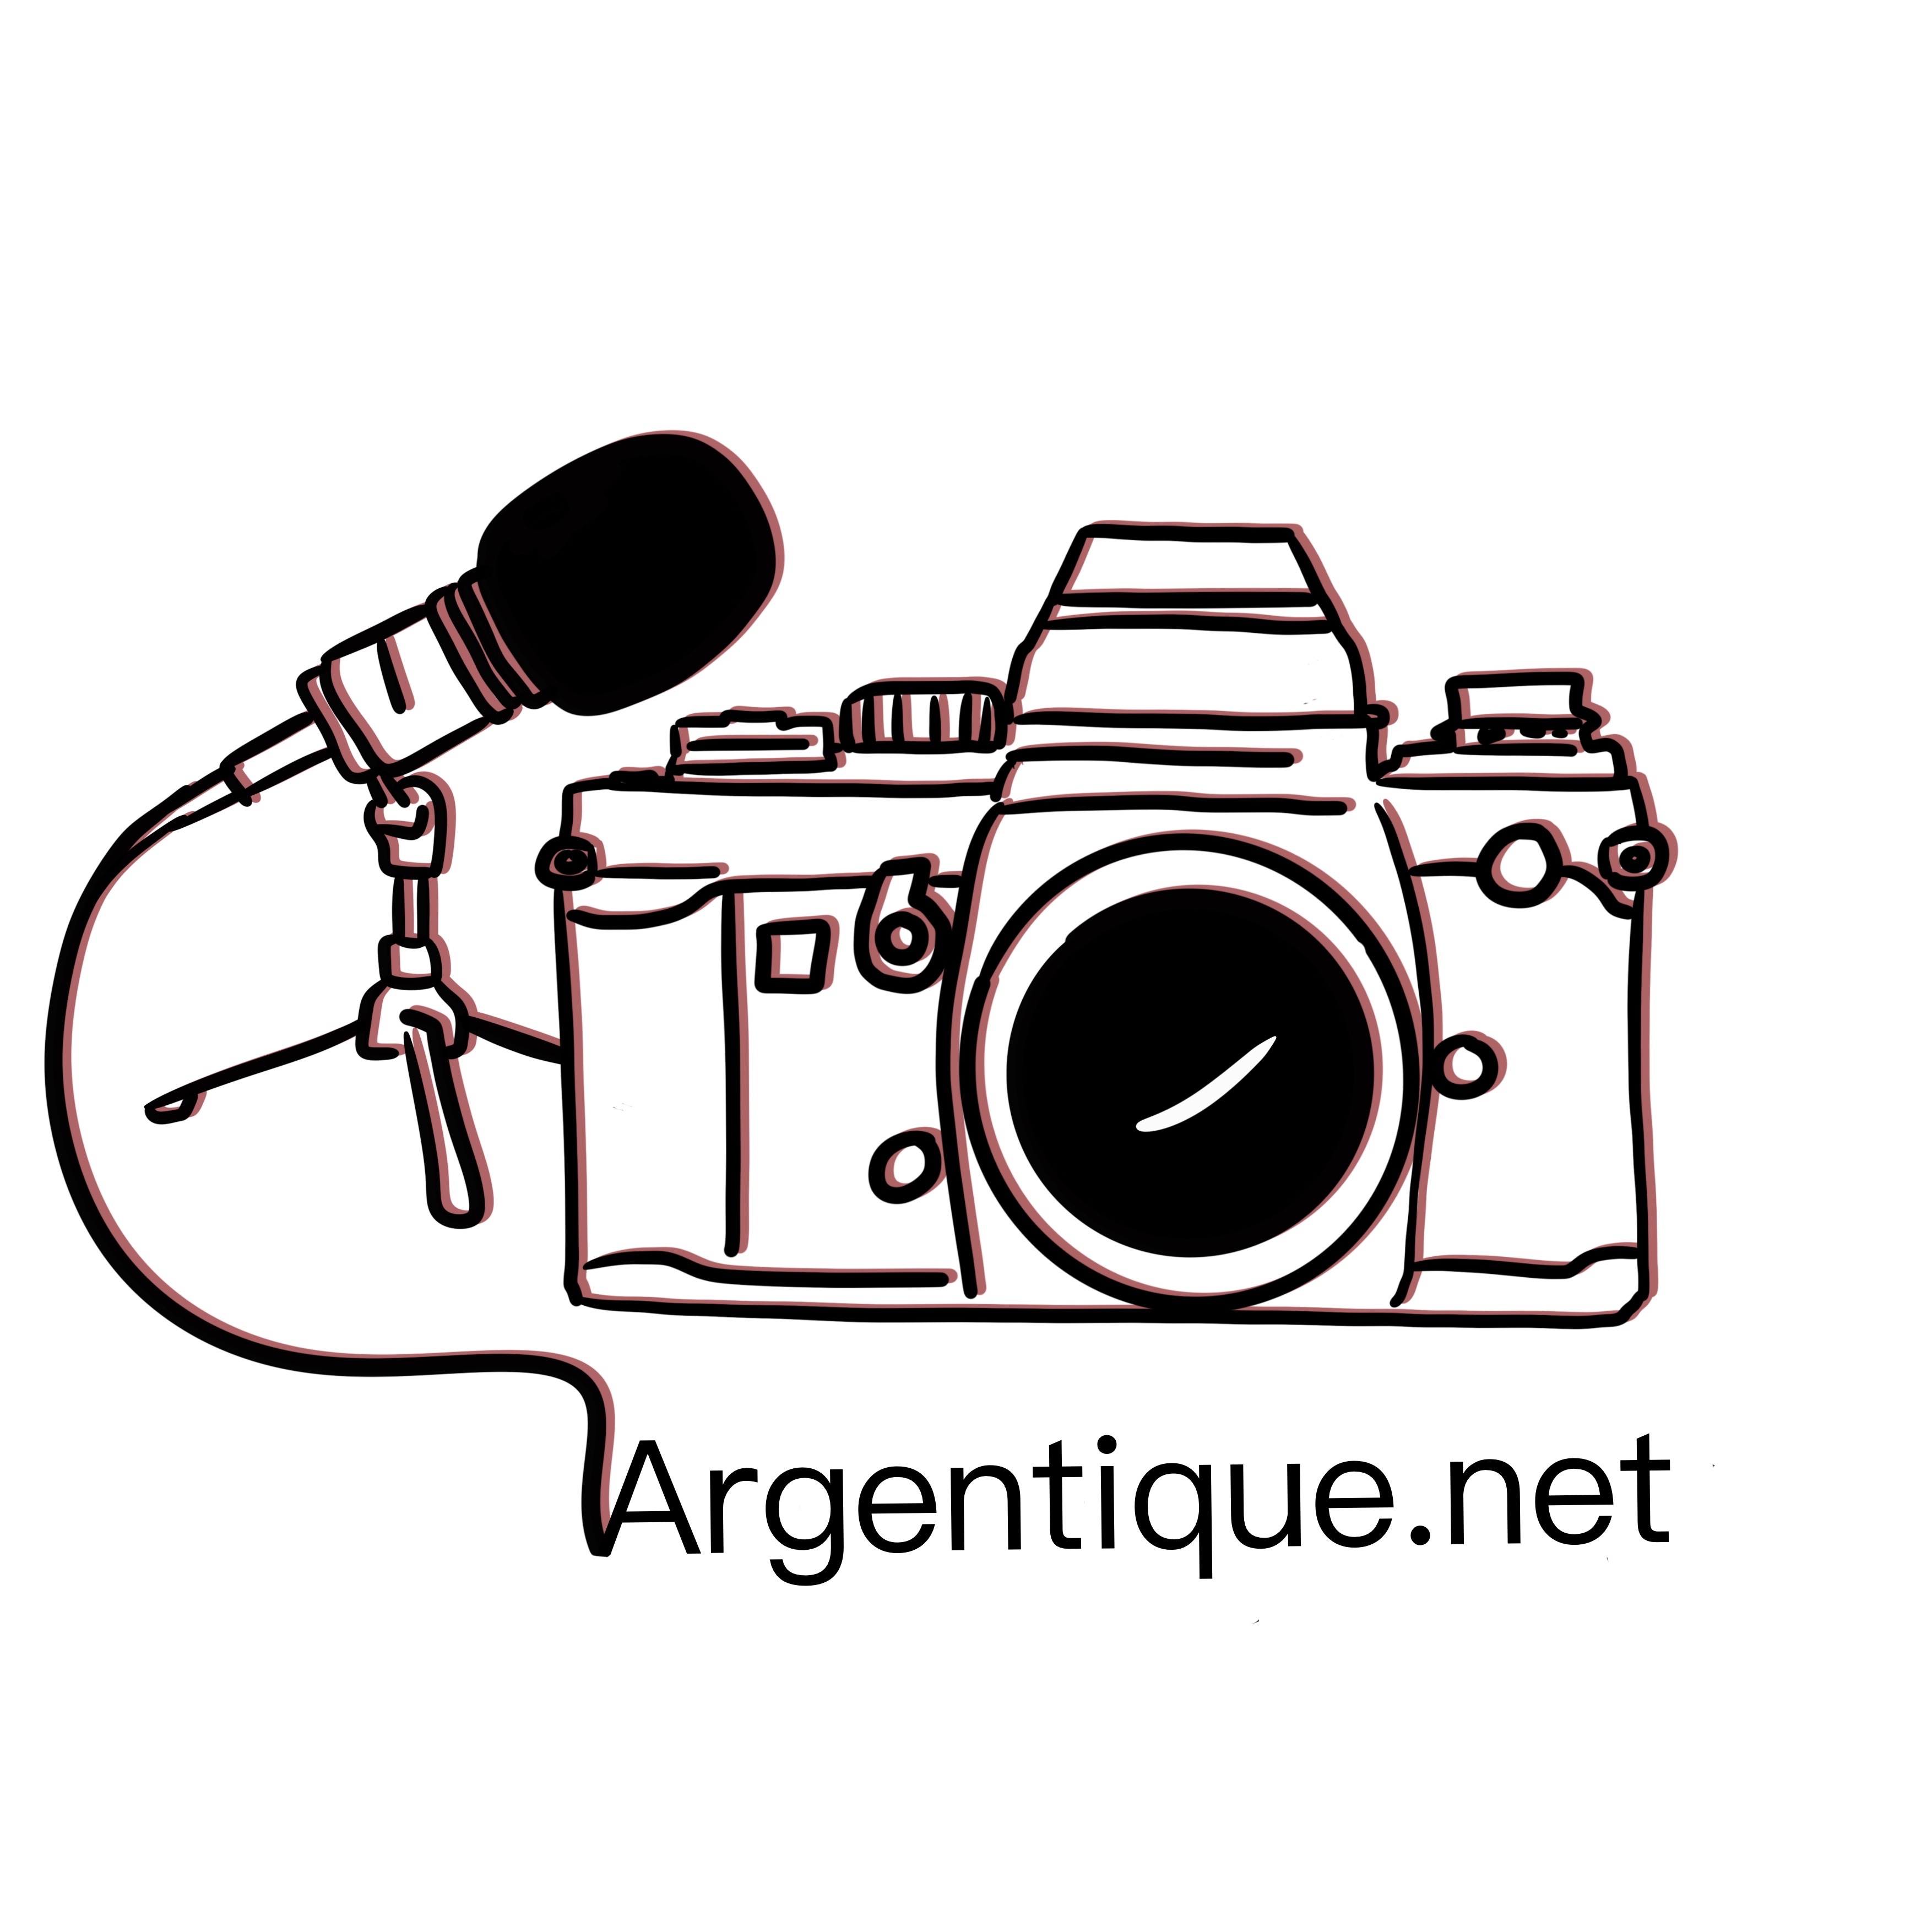 Argentique.net